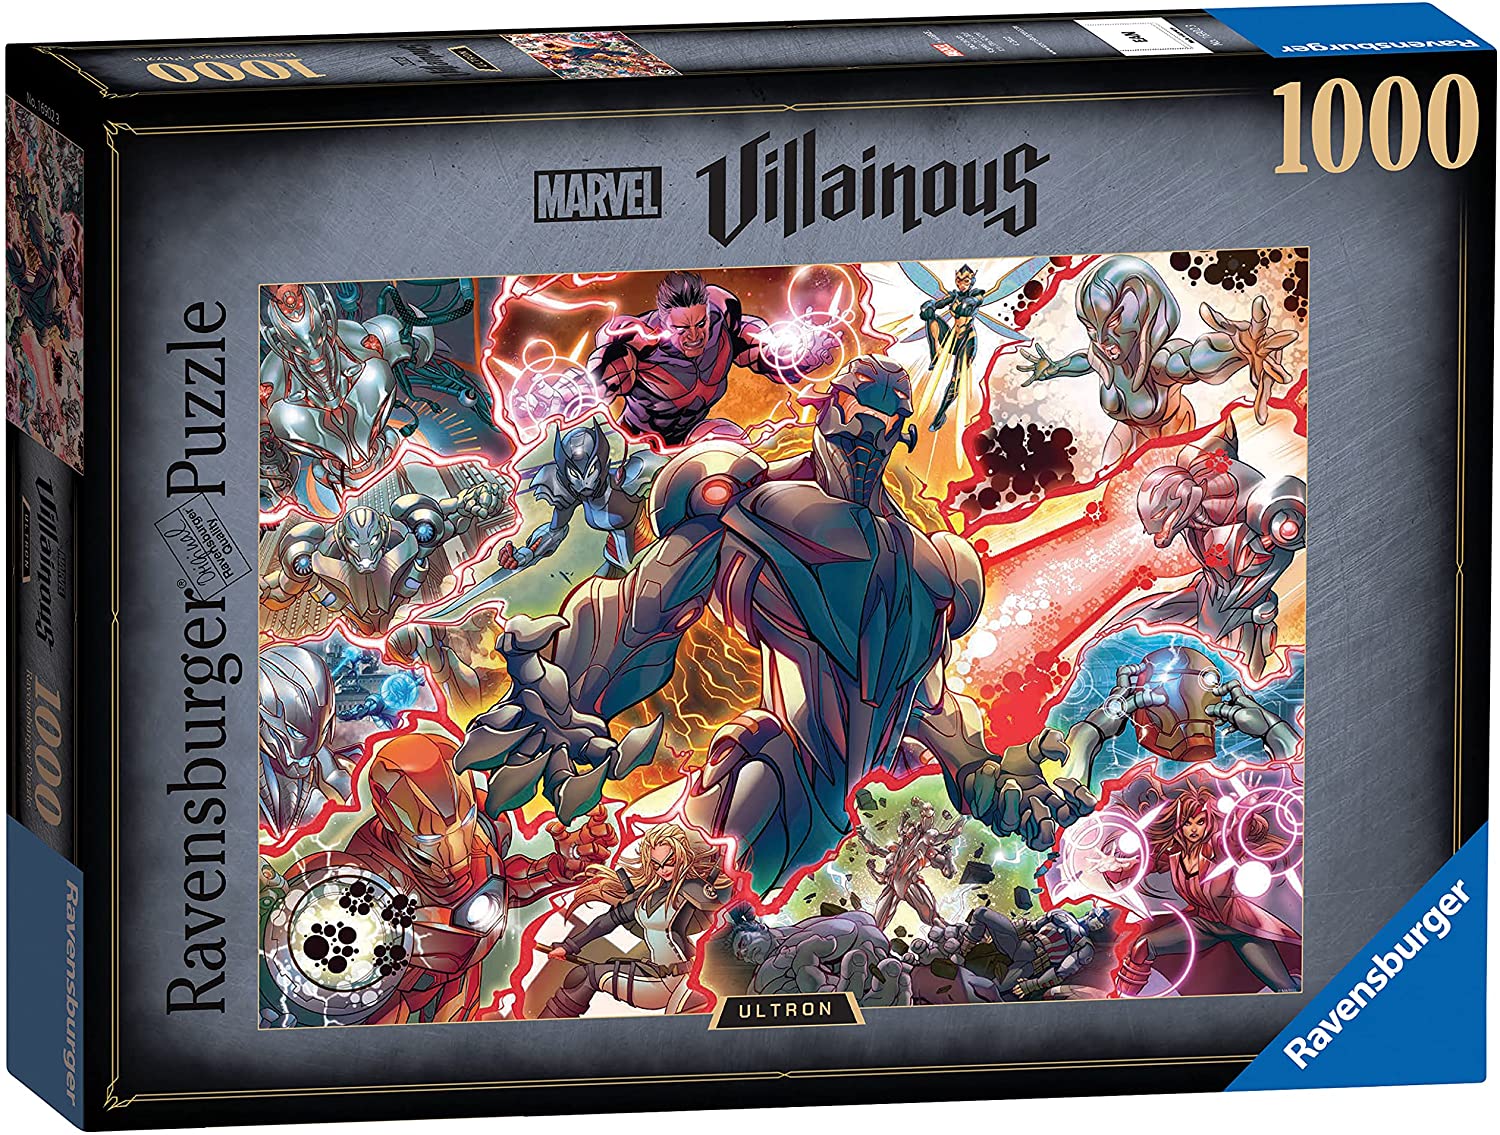 Ravensburger Marvel Villainous Ultron 1000 Piece Puzzle – The Puzzle